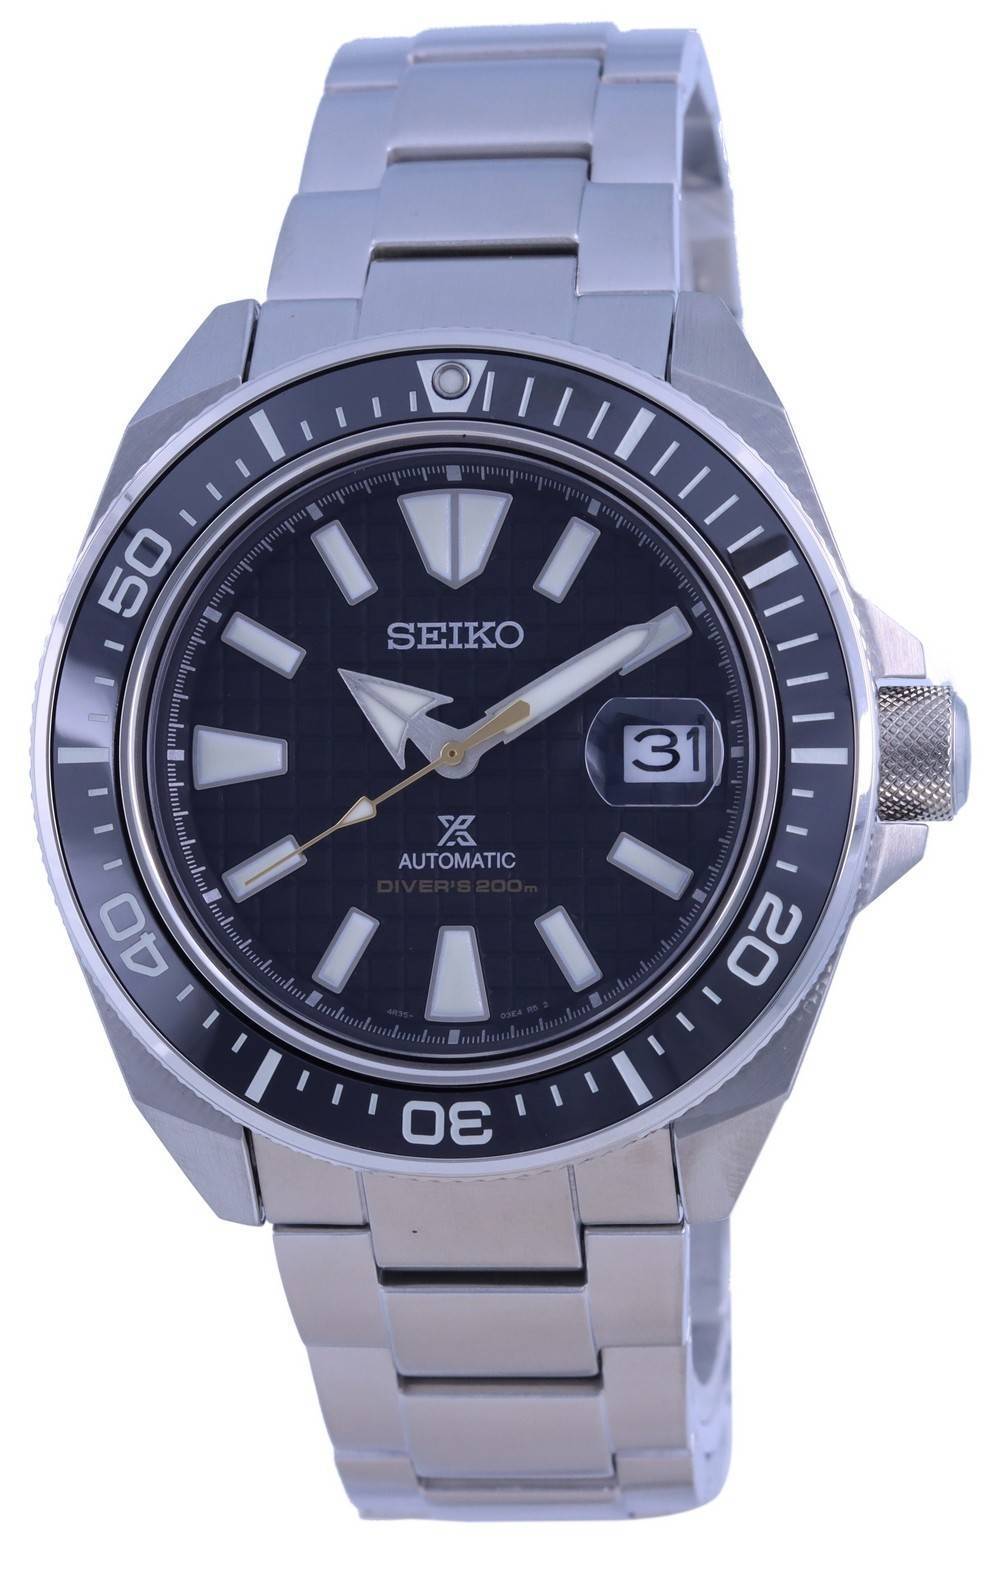 Đồng hồ nam Seiko Prospex King Samurai Automatic Diver's SRPE35 SRPE35K1  SRPE35K 200M vi